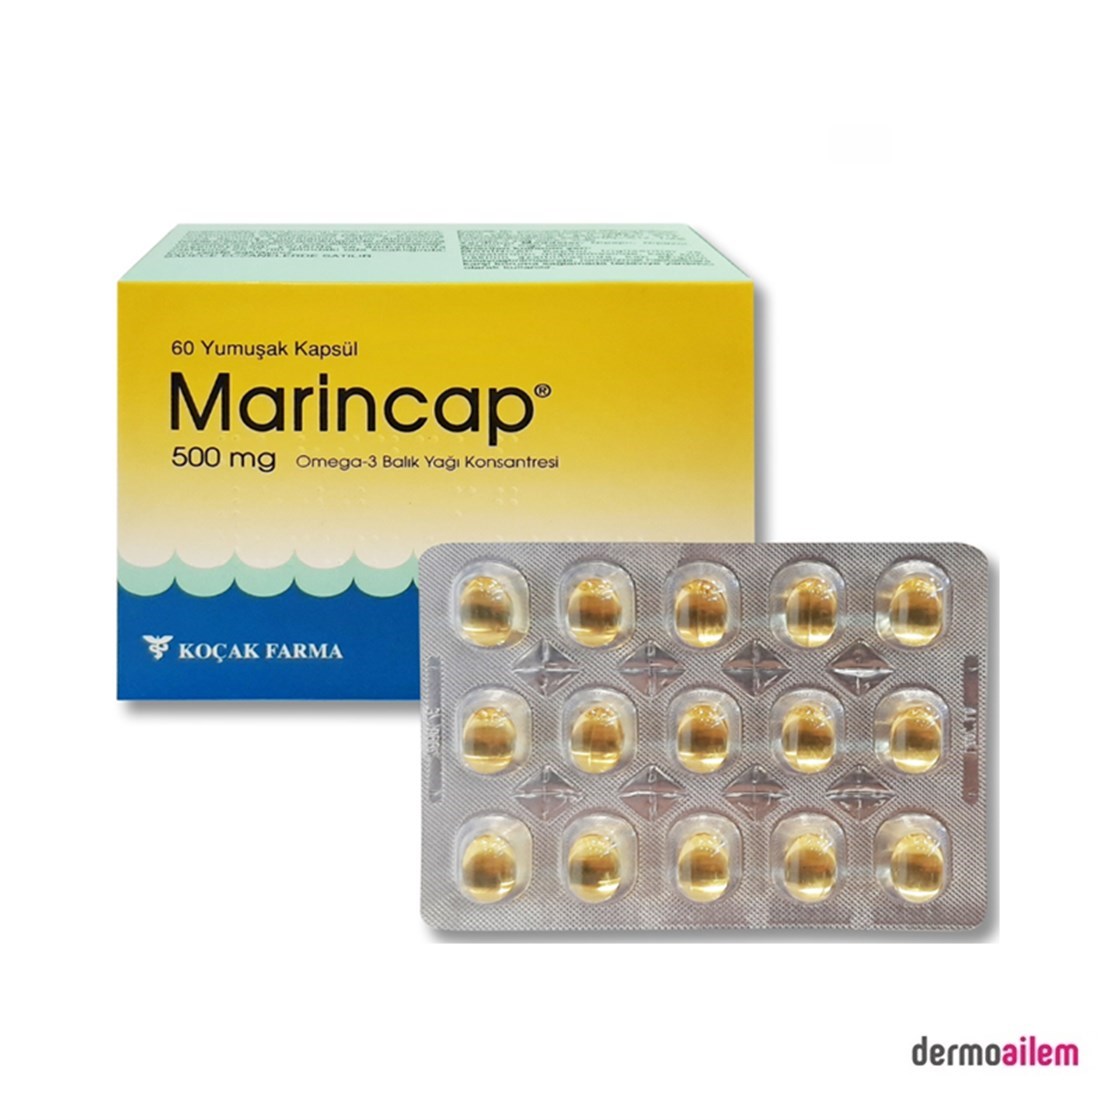 Marincap Omega 3 500 mg 60 Kapsül Balık Yağı Fiyatları İndirimli |  Dermoailem.com